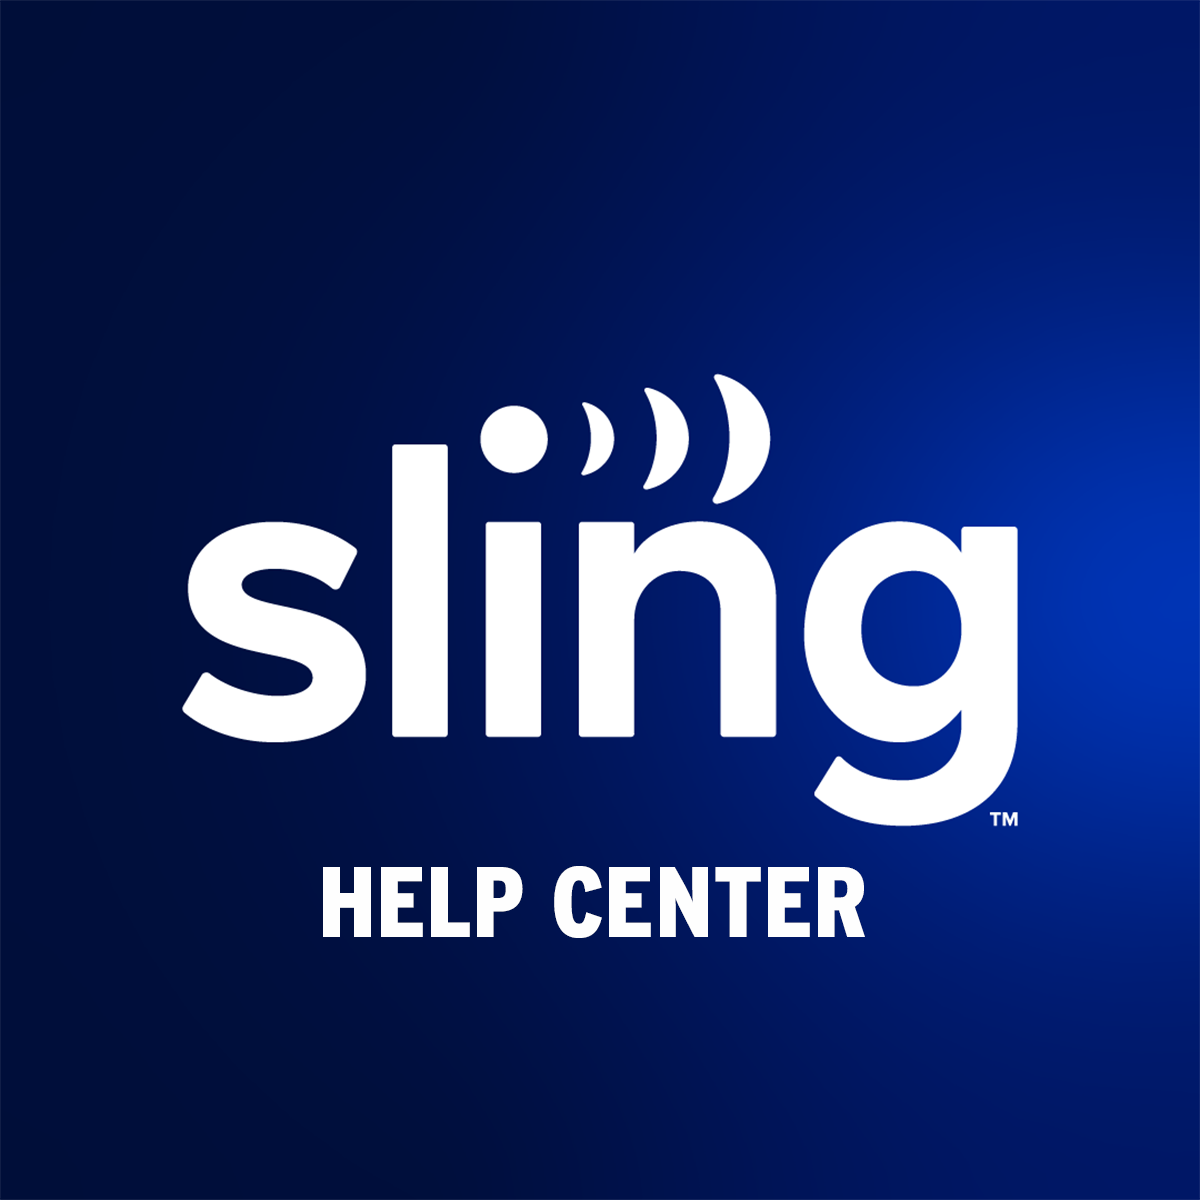 Balling Aardrijkskunde Aanleg Manage Your Account & Subscription | Sling TV Help